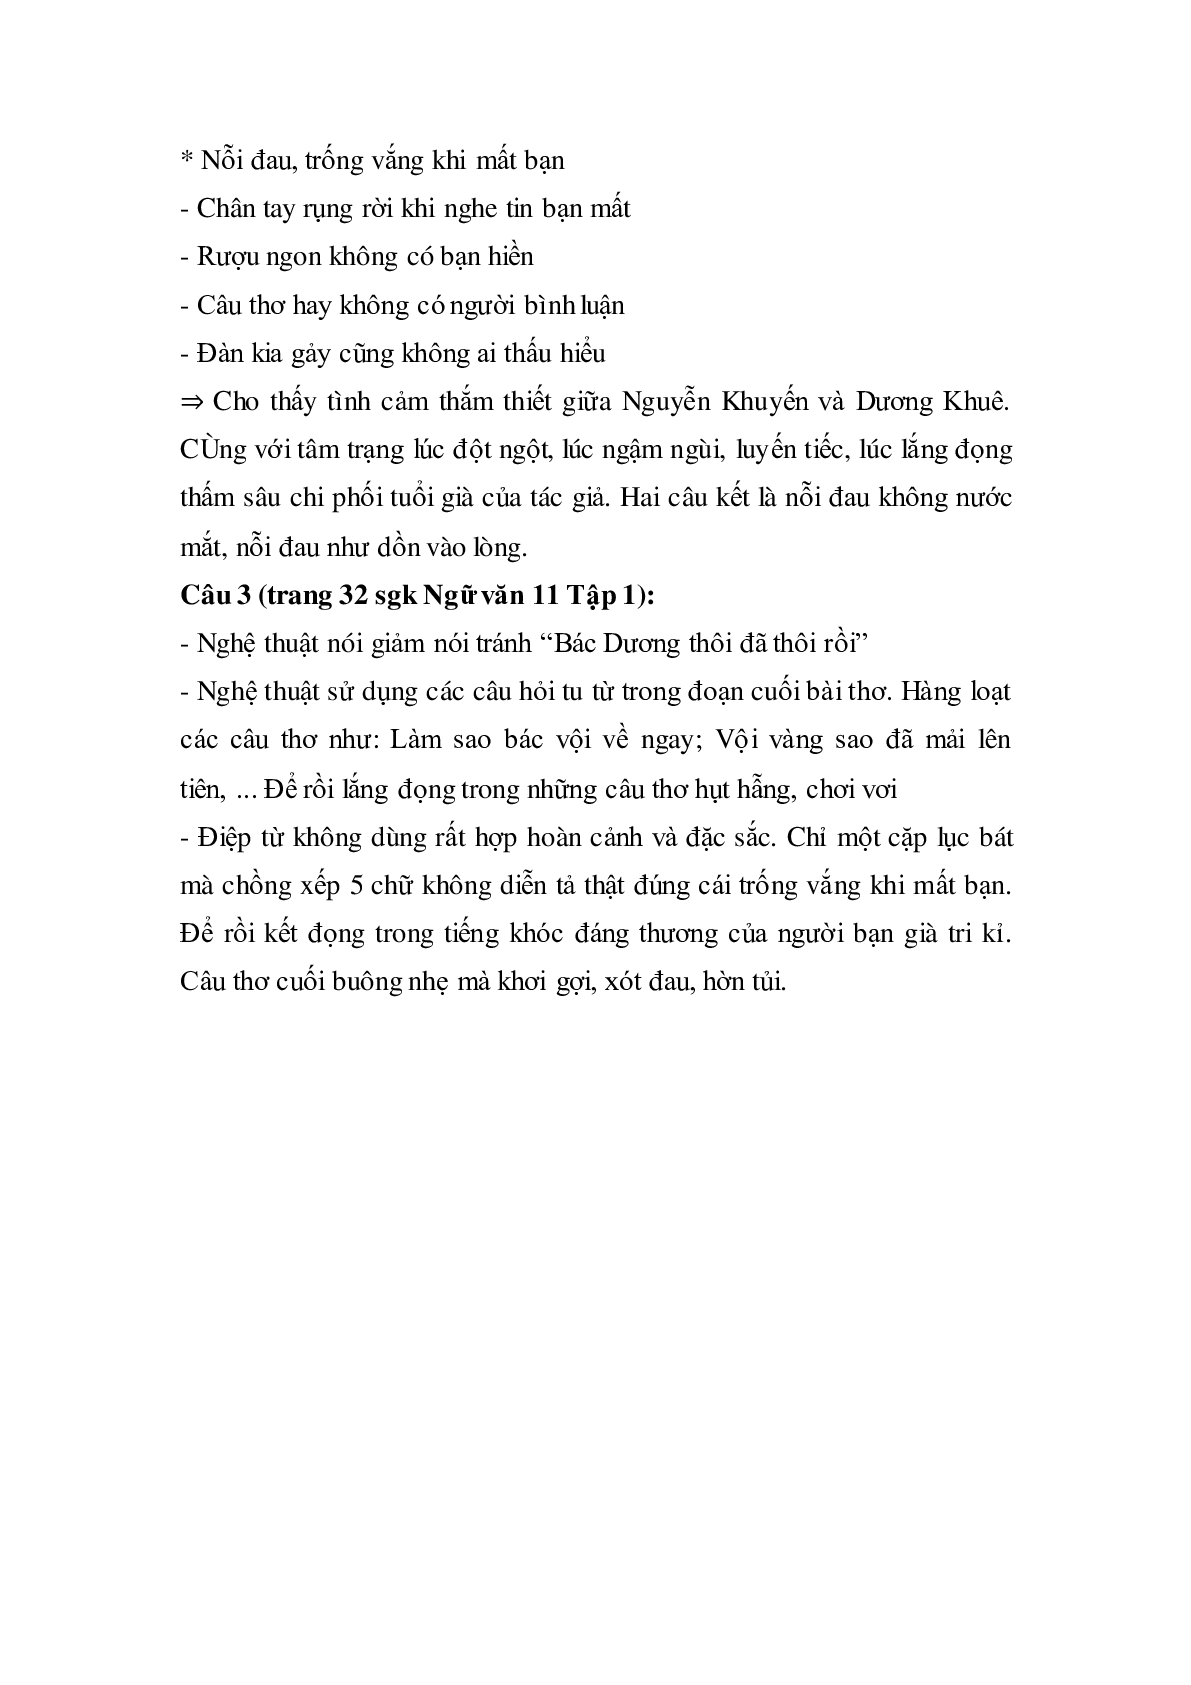 Soạn bài Khóc Dương Khuê - ngắn nhất Soạn văn 11 (trang 6)